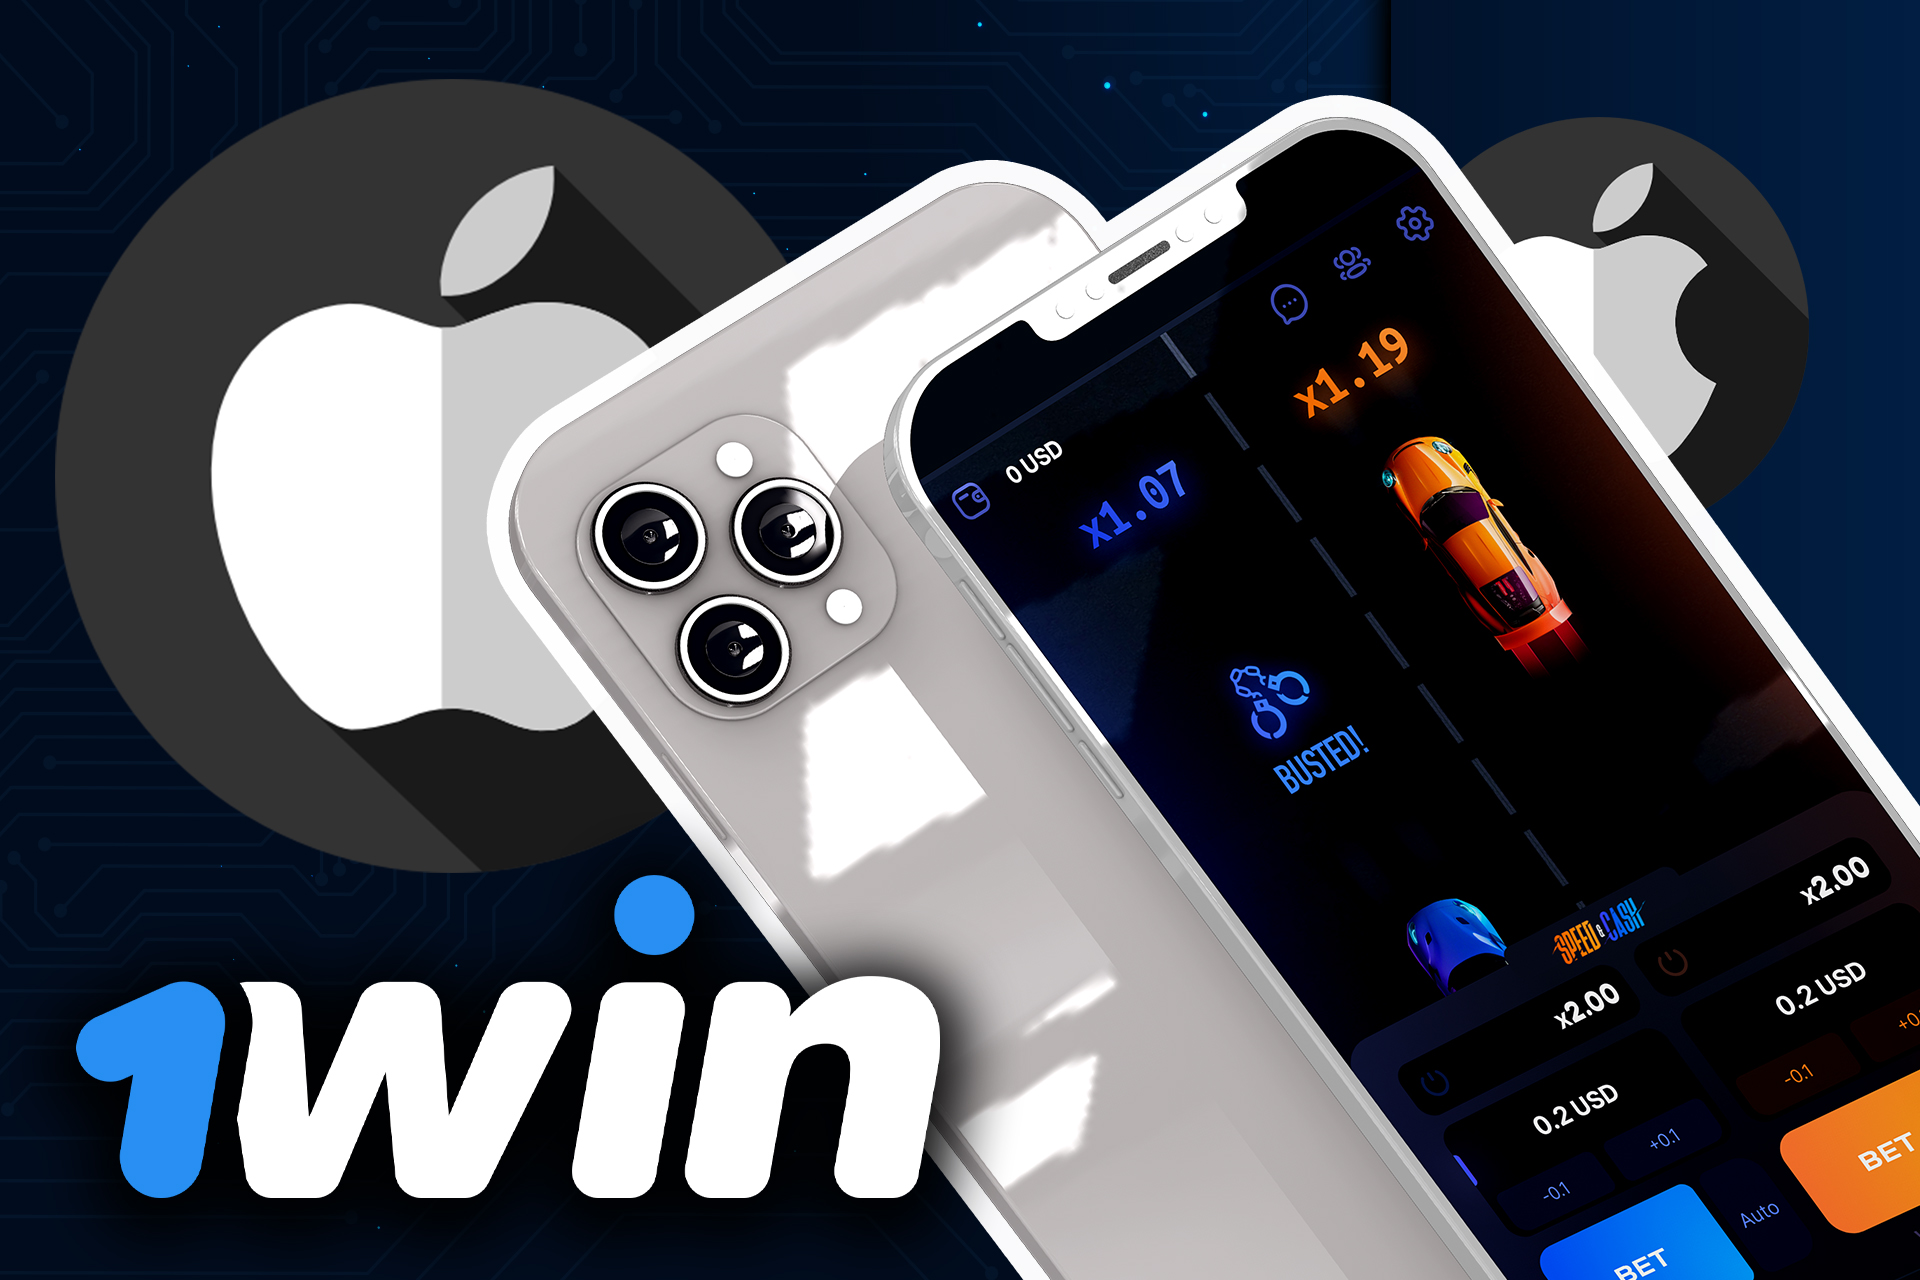 Instala la aplicación 1win en tu iPhone y juega a Speed and Cash.